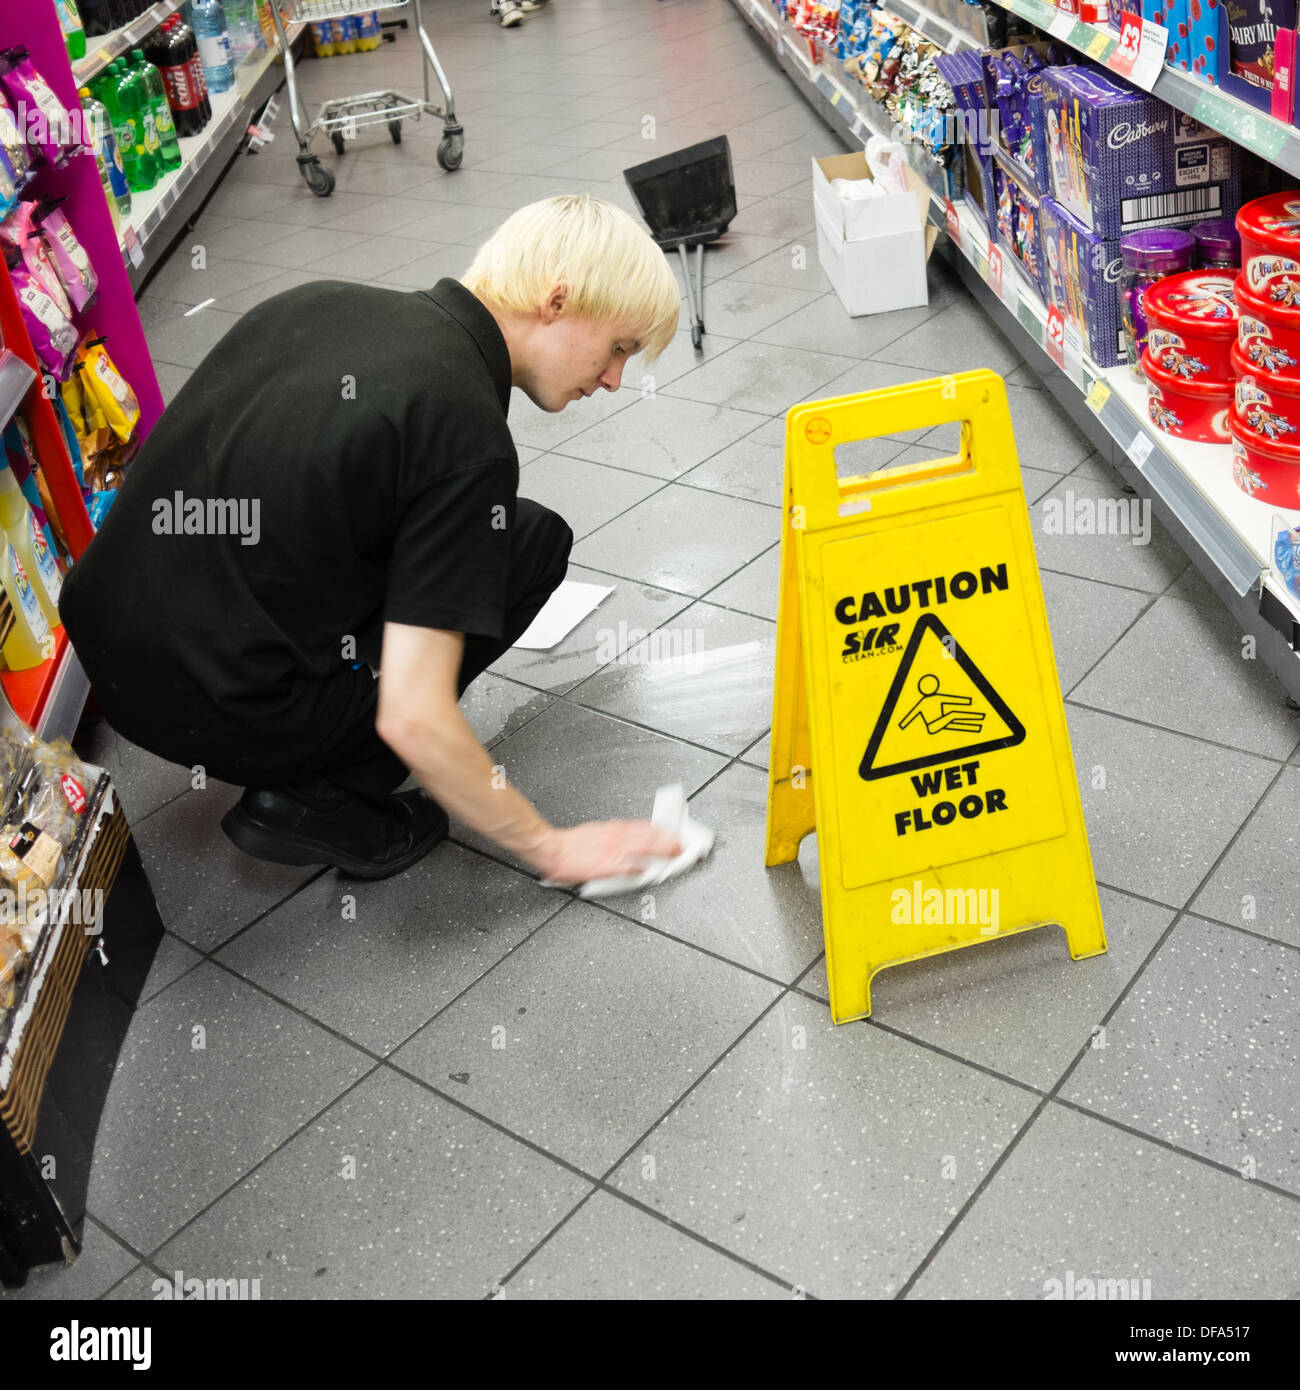 Vorsicht nassen Boden: Ein junger Mann, arbeiten, Aufräumen ein Spritzer  auf dem Boden eines Supermarktes, UK Stockfotografie - Alamy